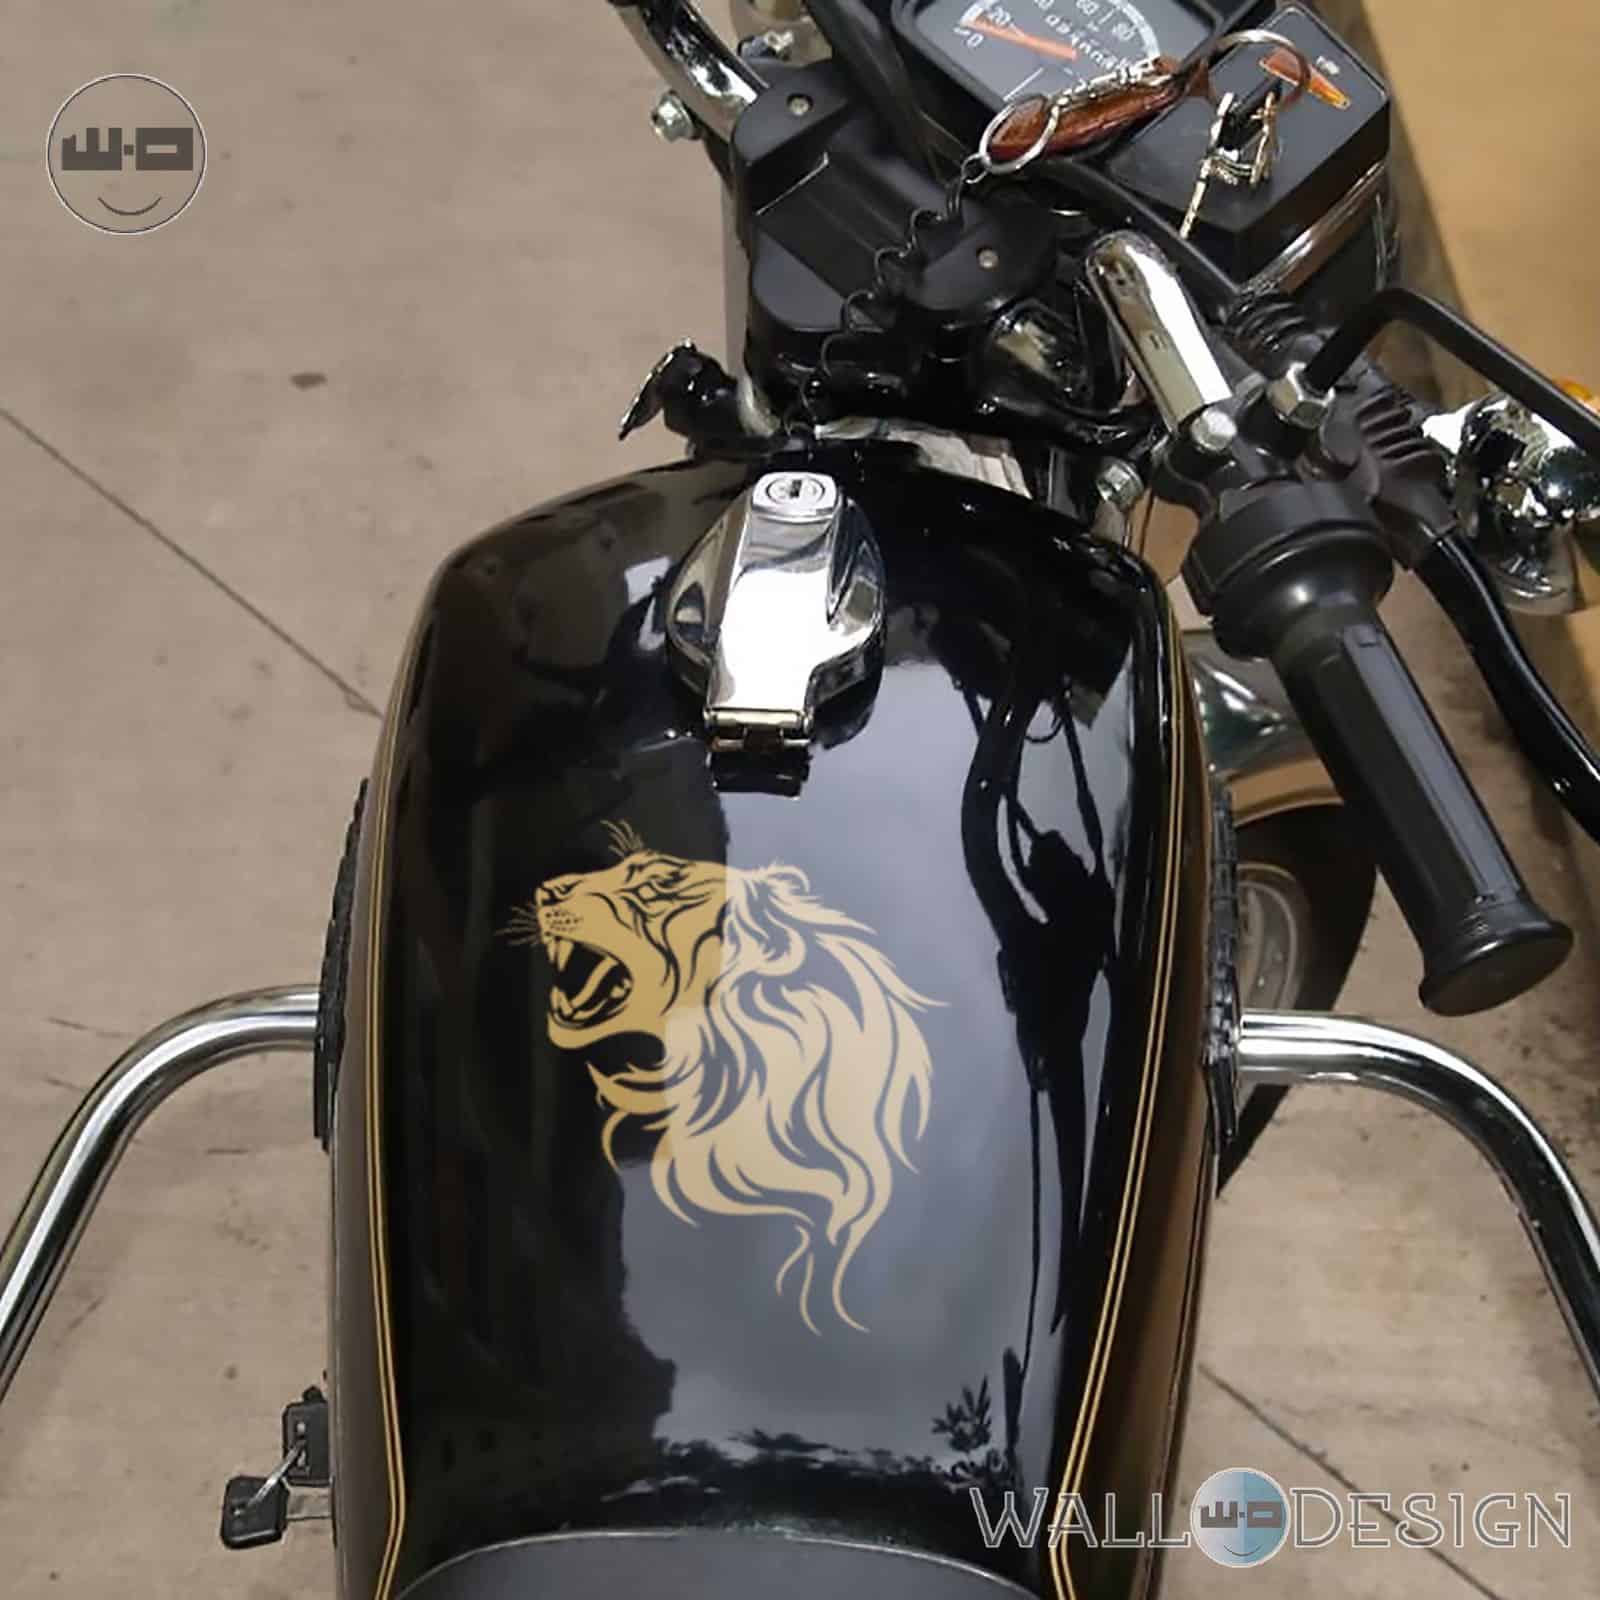 Lions Den Avenger Bike Stickers